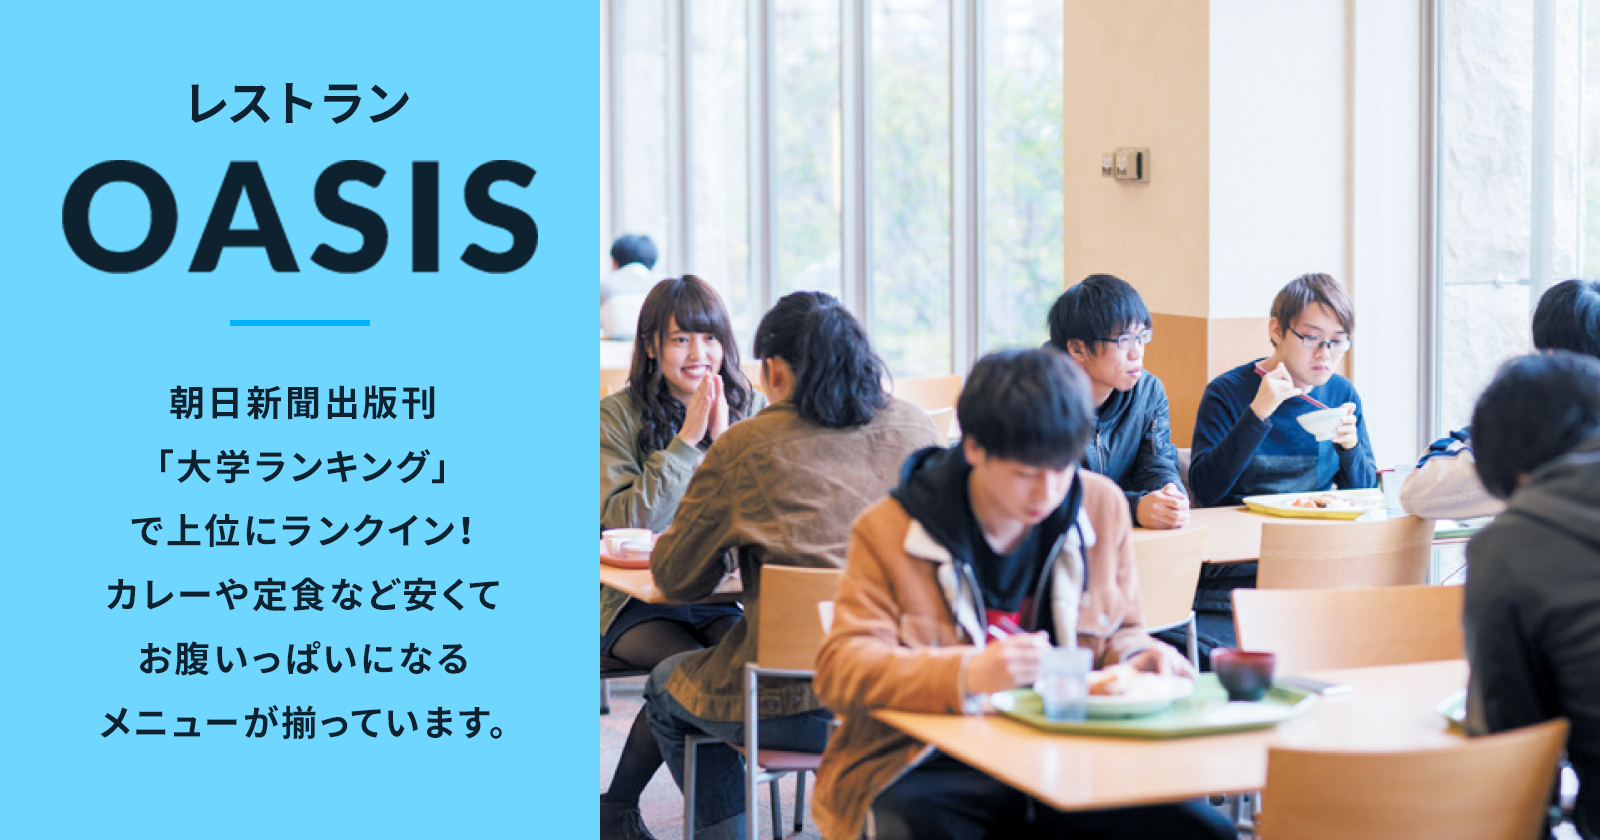 レストランOASIS 朝日新聞出版刊「大学ランキング」で上位にランクイン！カレーや定食など安くてお腹いっぱいになるメニューが揃っています。